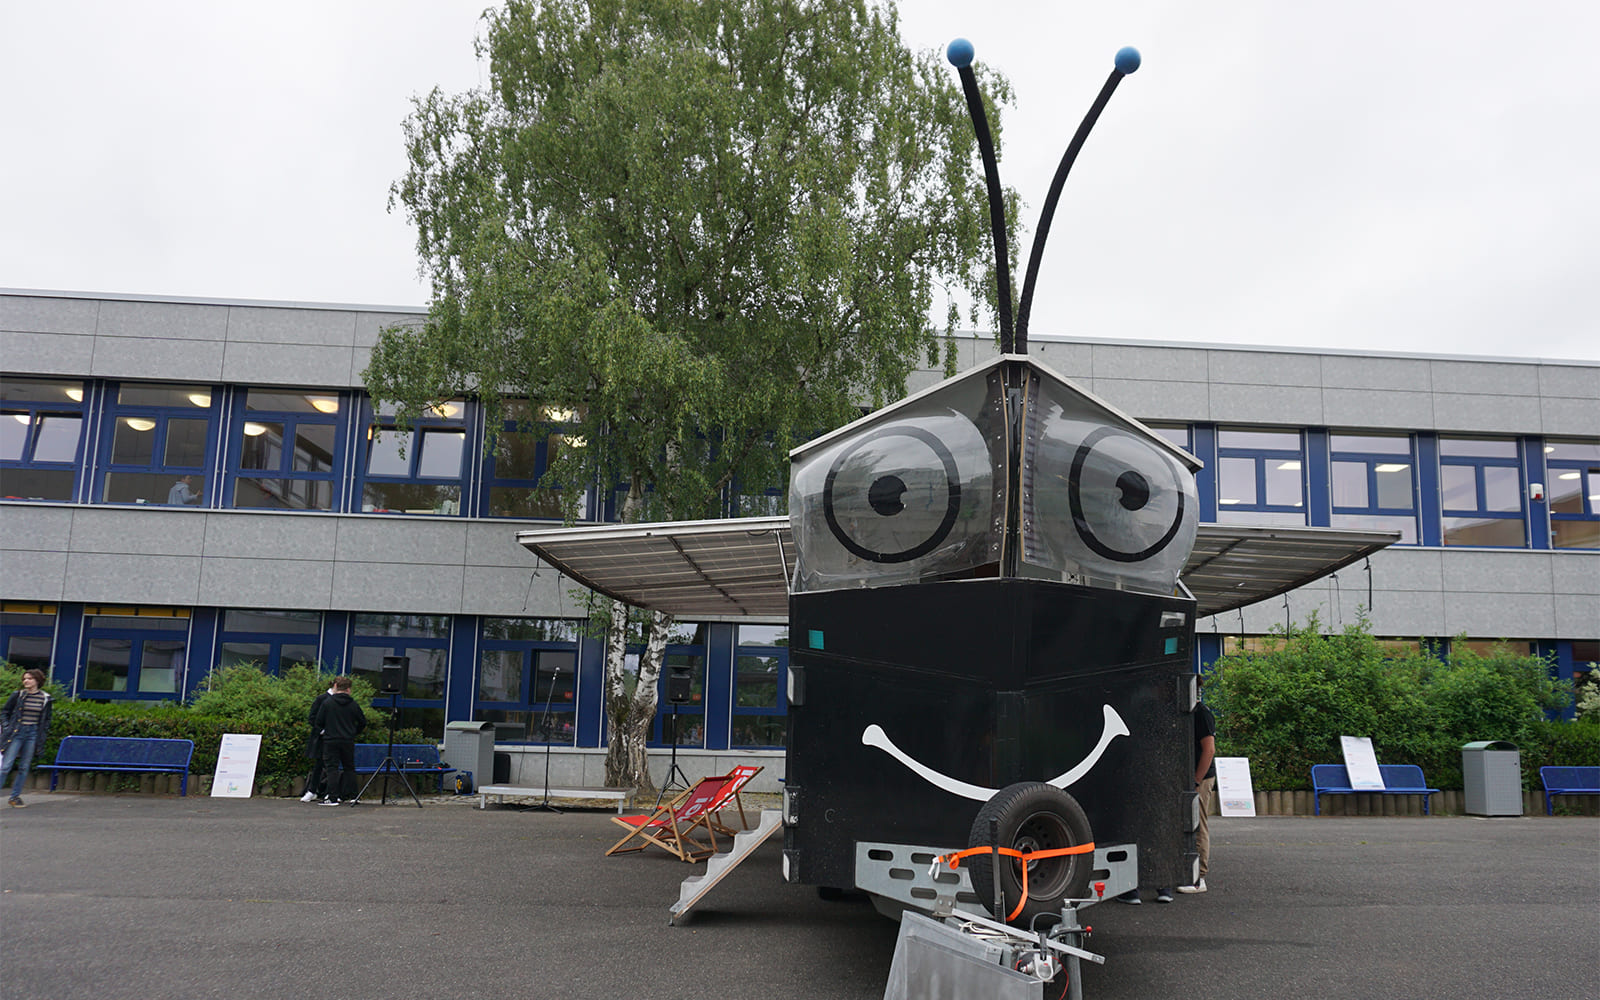 Solarbutterfly landet in Erkelenz: Auf der Suche nach 1.000 Lösungen gegen den Klimawandel